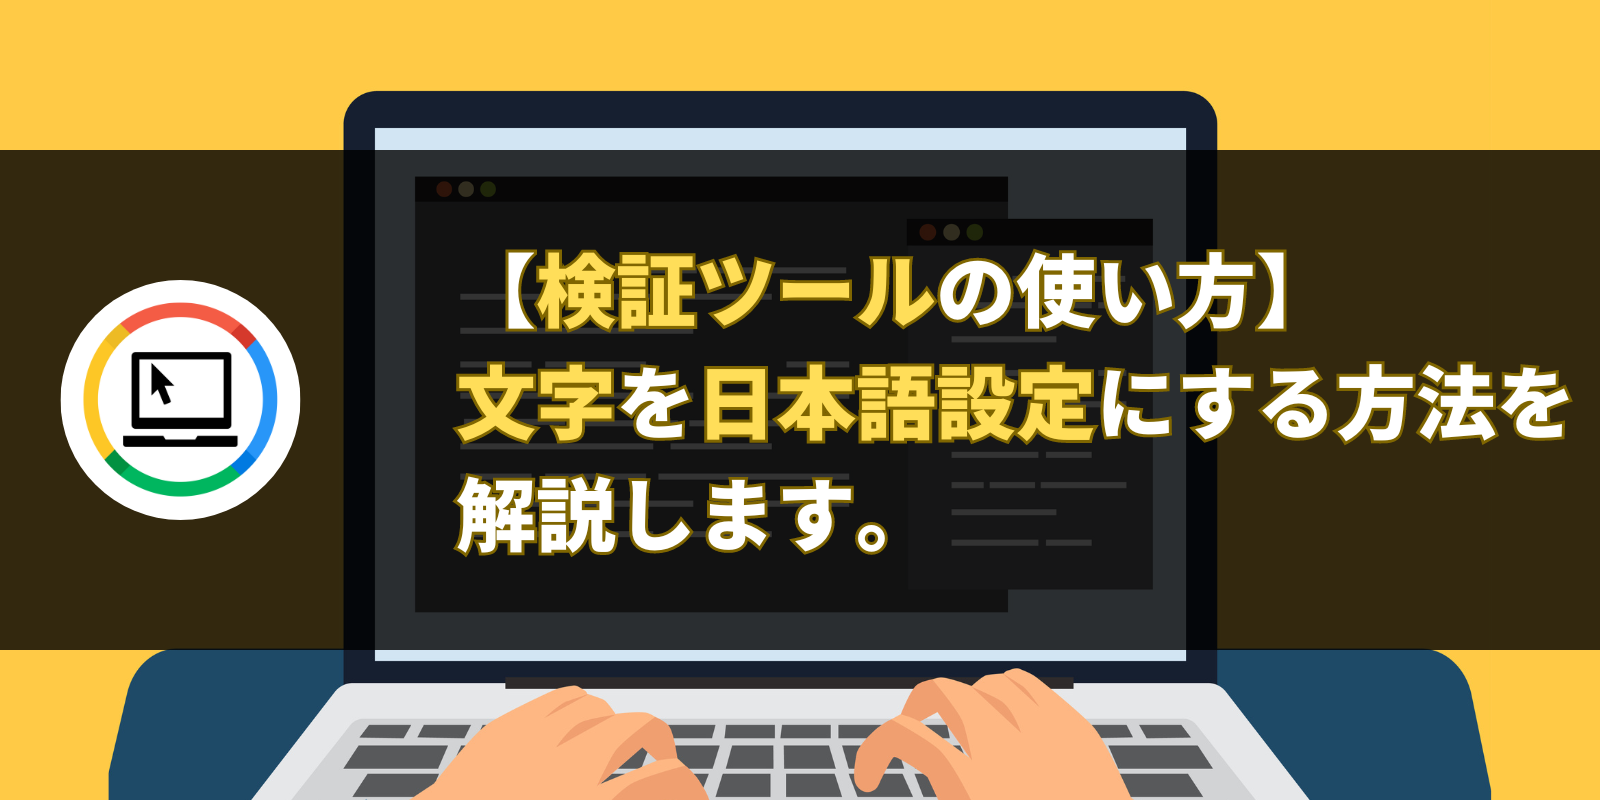 【検証ツールの使い方】文字を日本語設定にする方法を解説します。